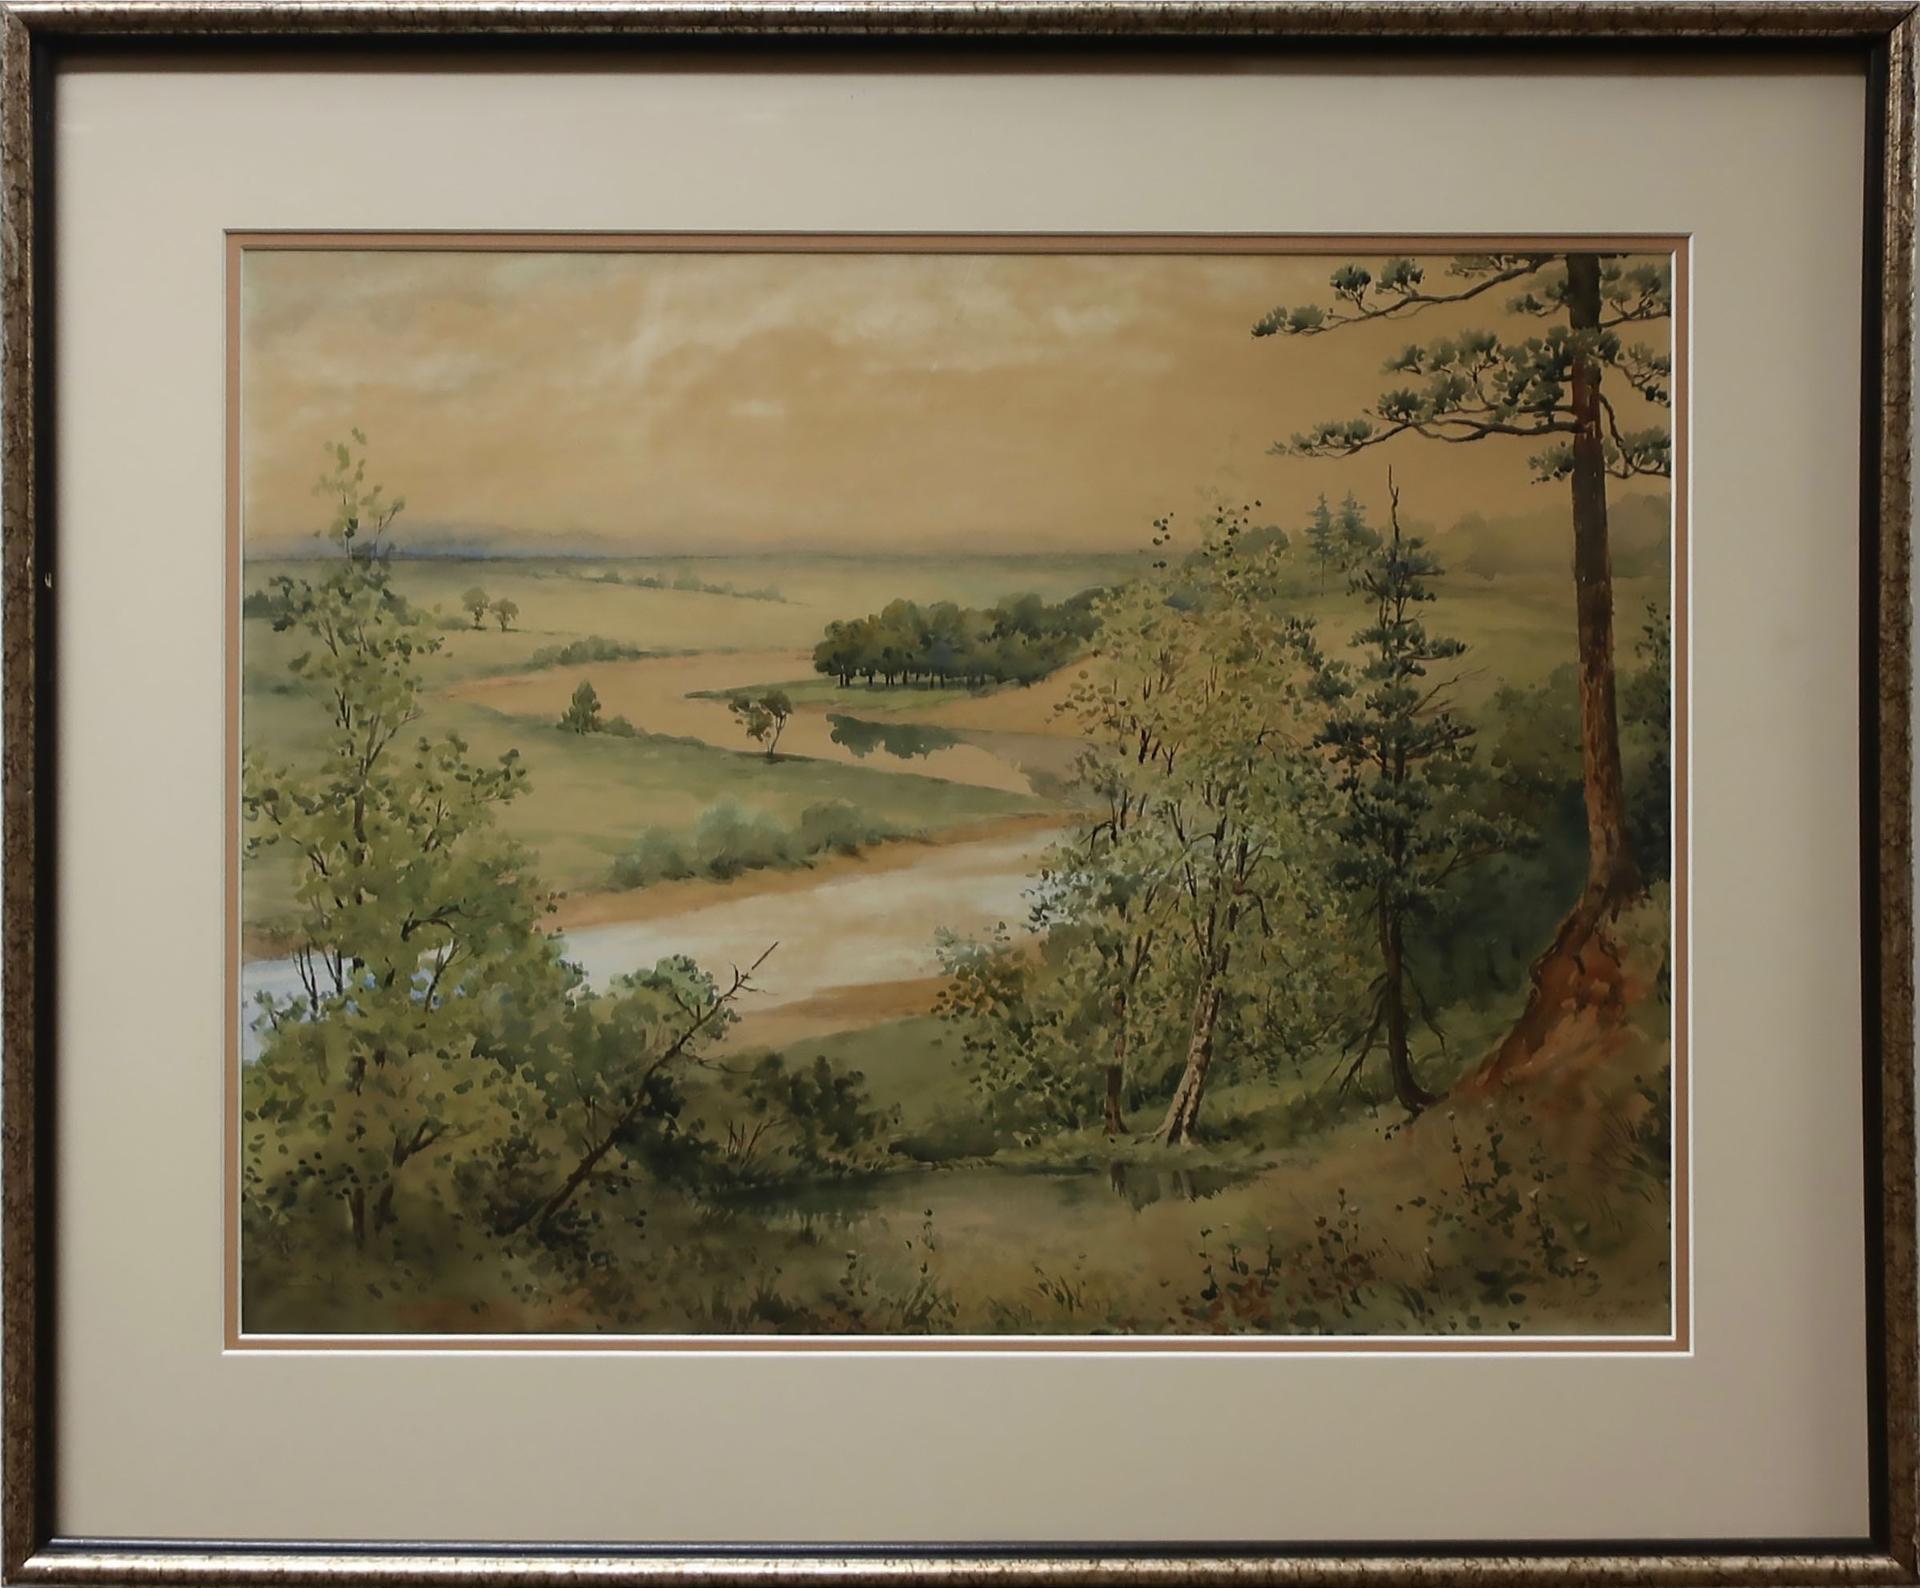 Julien Ruggles Seavey (1857-1940) - Tutela Heights, Brantford